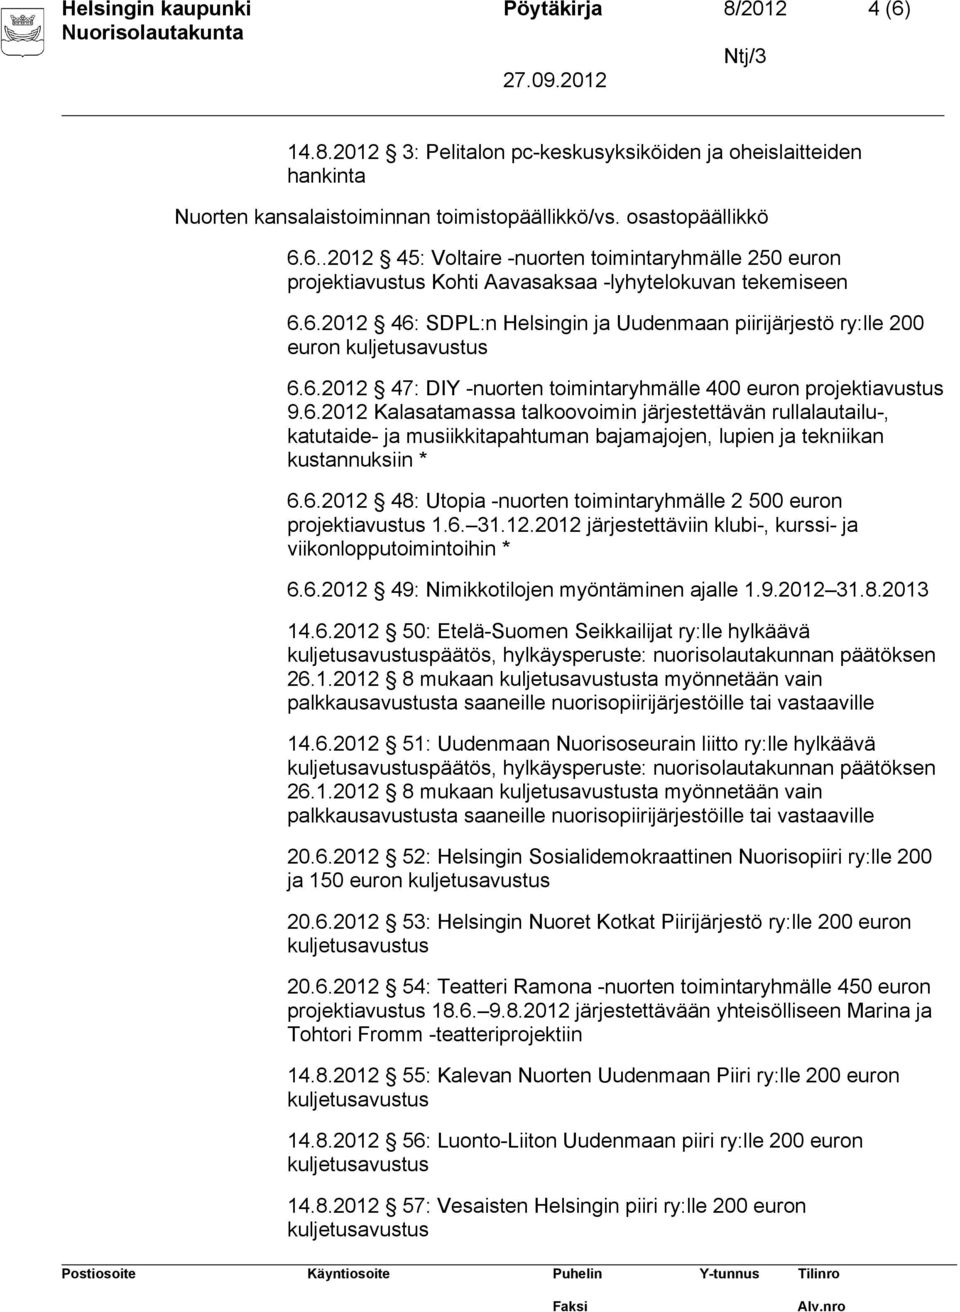 6.2012 48: Utopia -nuorten toimintaryhmälle 2 500 euron projektiavustus 1.6. 31.12.2012 järjestettäviin klubi-, kurssi- ja viikonlopputoimintoihin 6.6.2012 49: Nimikkotilojen myöntäminen ajalle 1.9.2012 31.